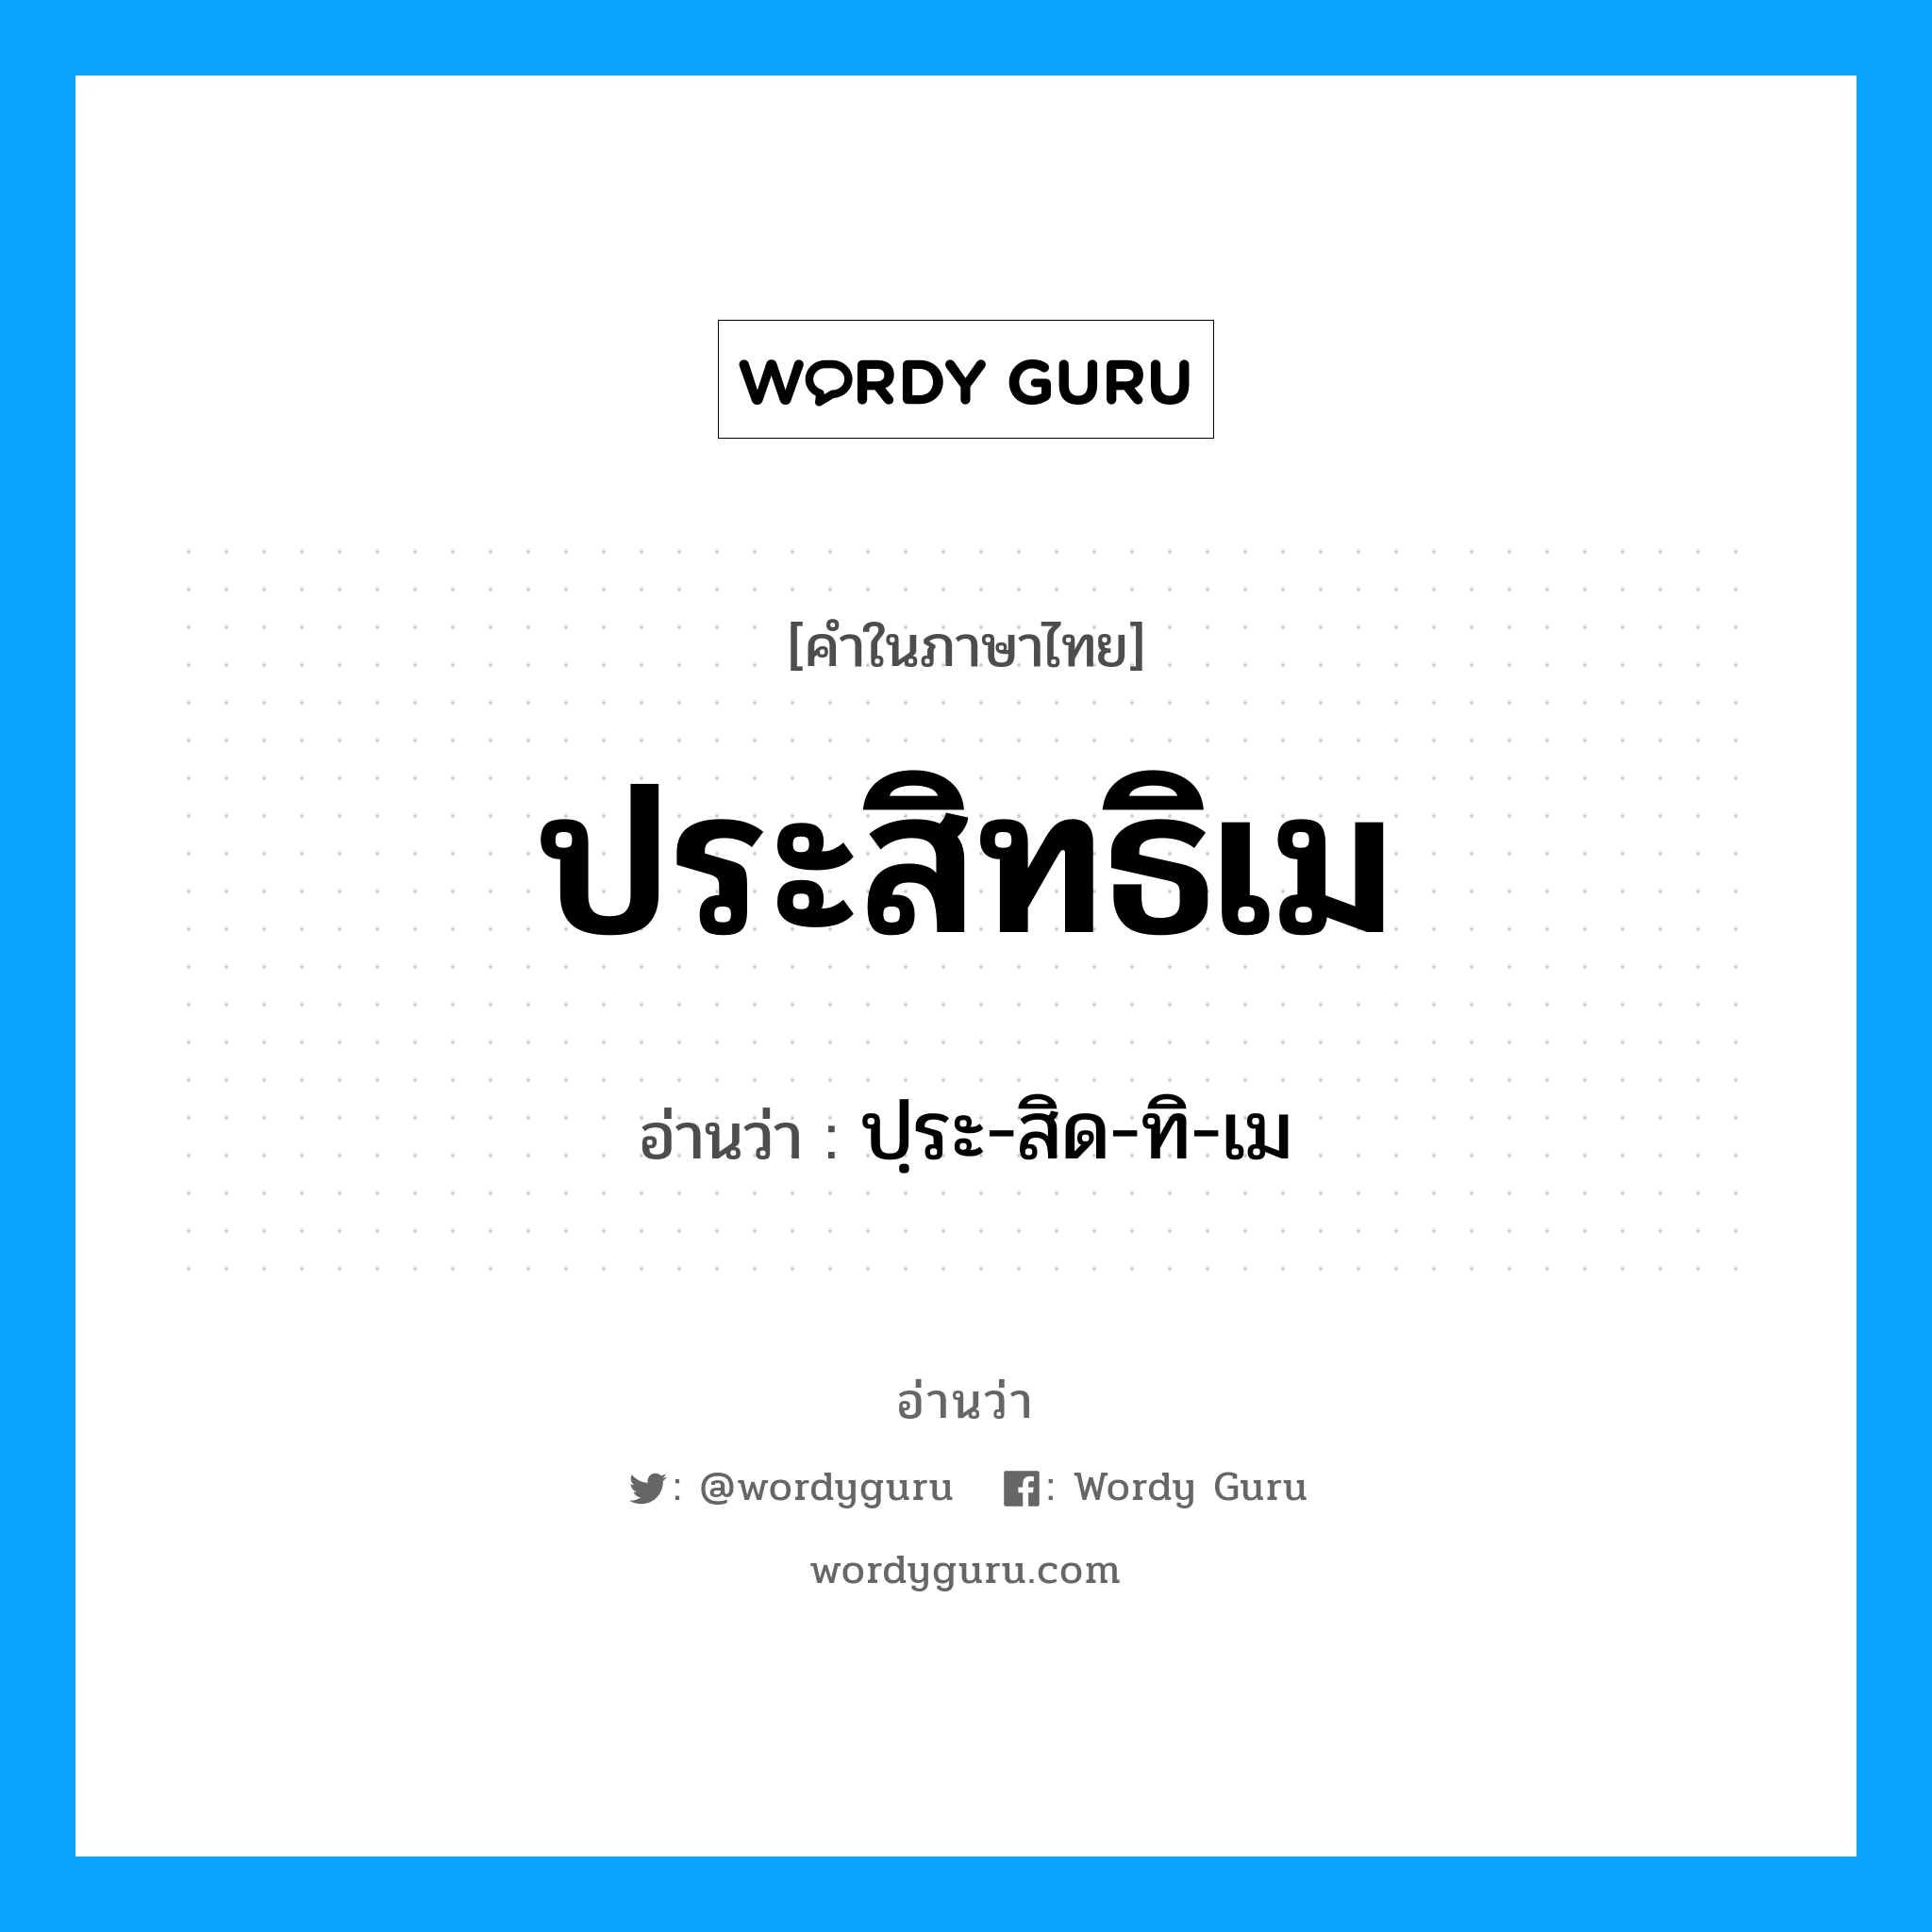 ปฺระ-สิด-ทิ-เม เป็นคำอ่านของคำไหน?, คำในภาษาไทย ปฺระ-สิด-ทิ-เม อ่านว่า ประสิทธิเม